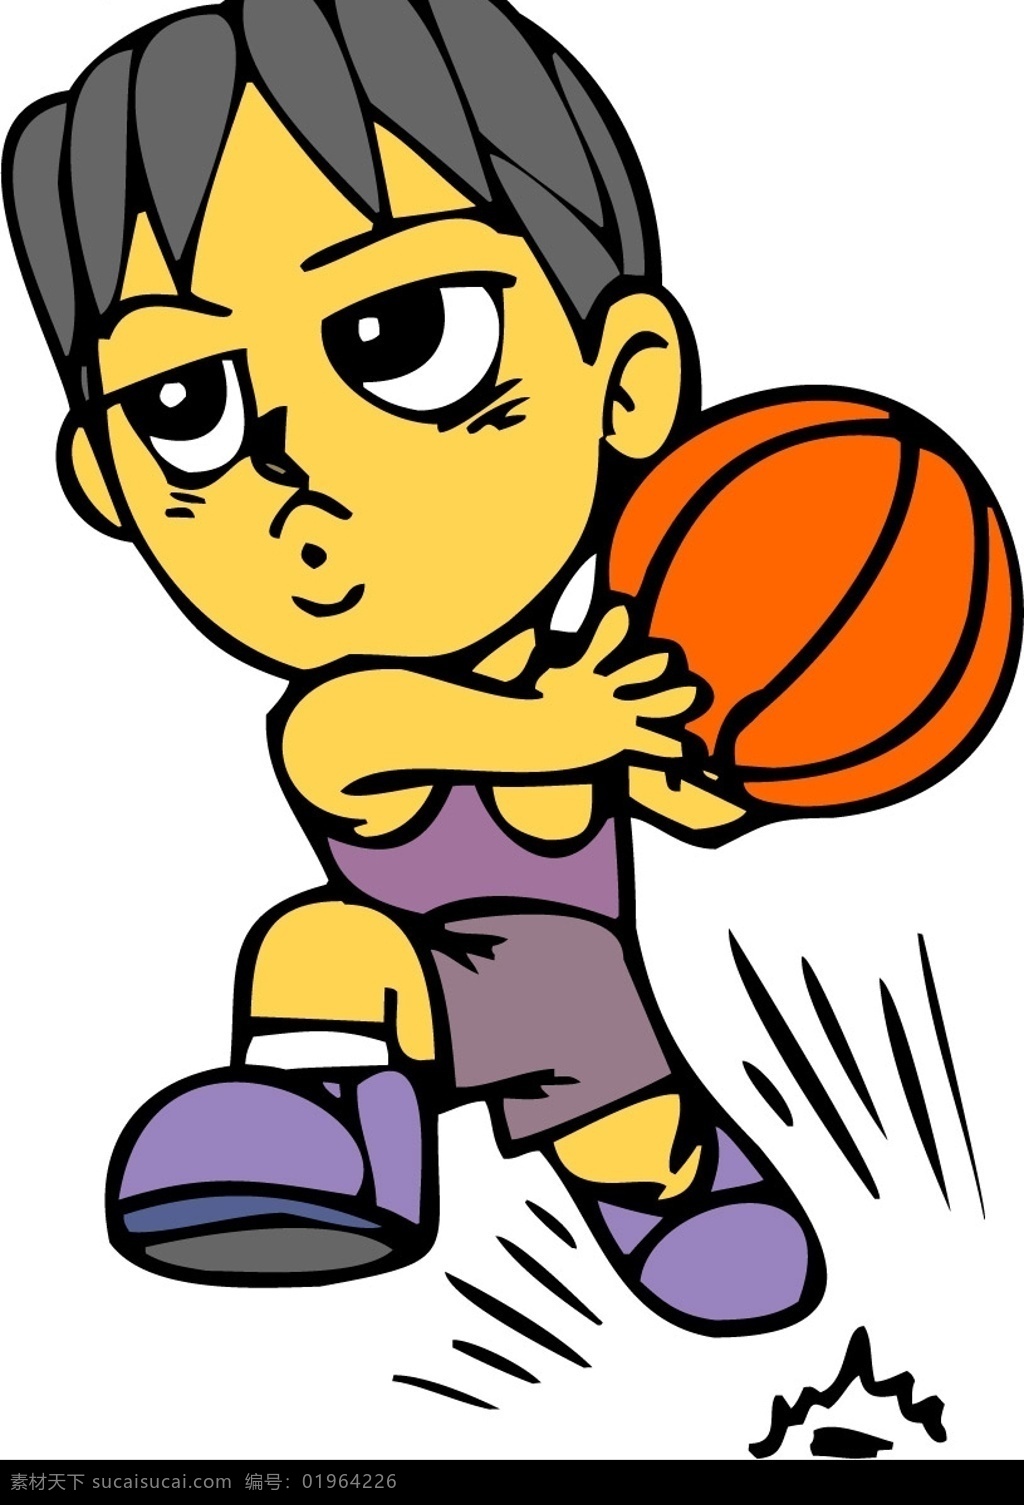 卡通nba4 篮球动作 文化艺术 体育运动 卡通矢量 矢量图库